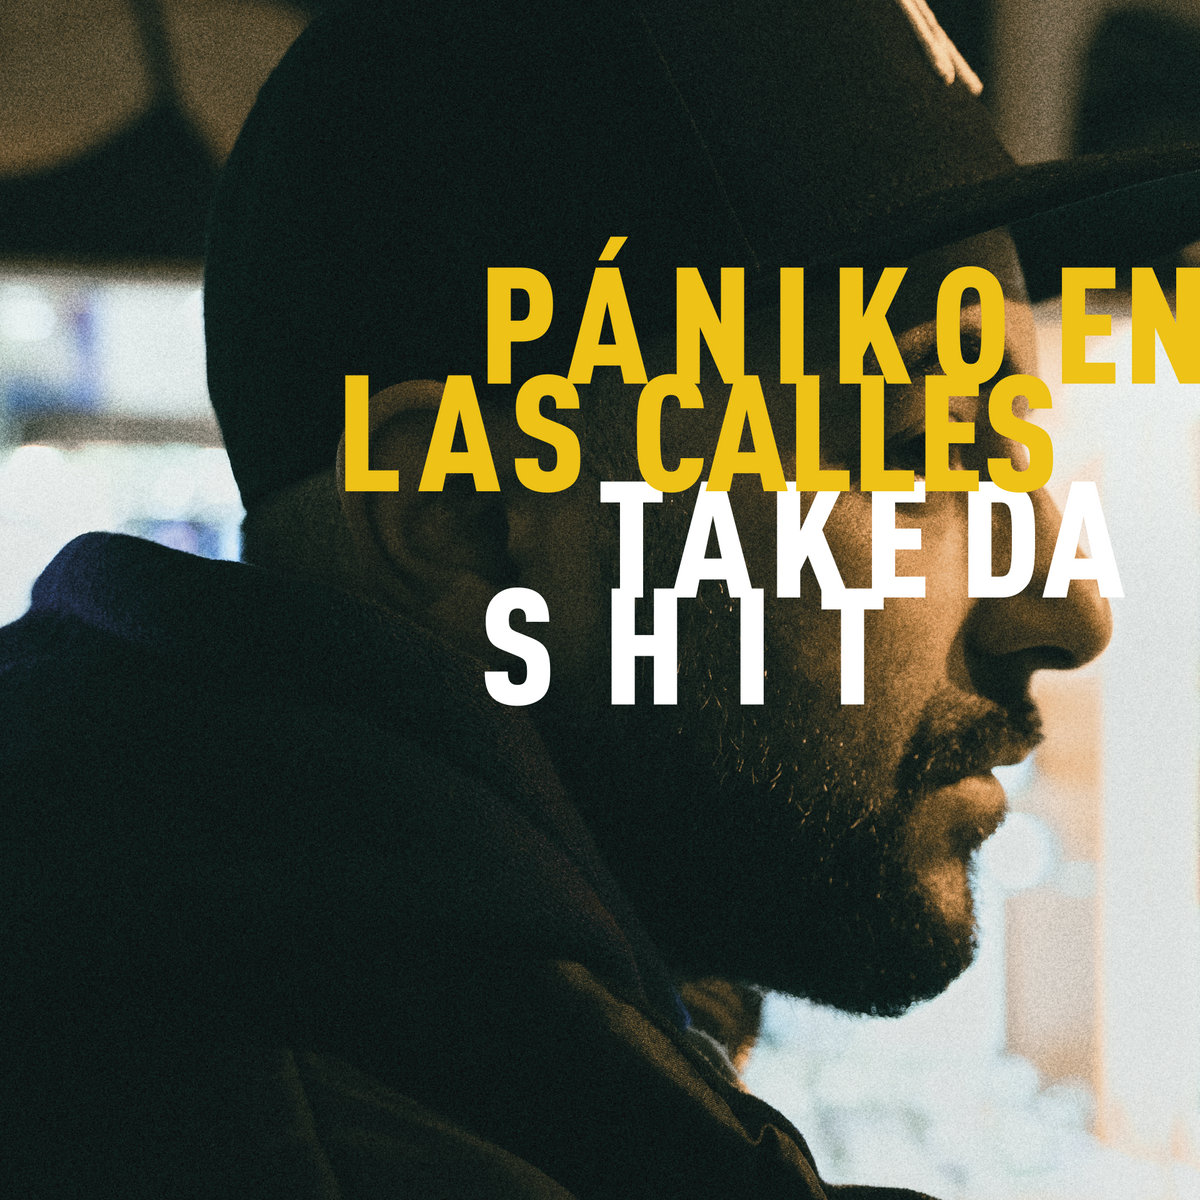 Take_da_shit_paniko_en_las_calles